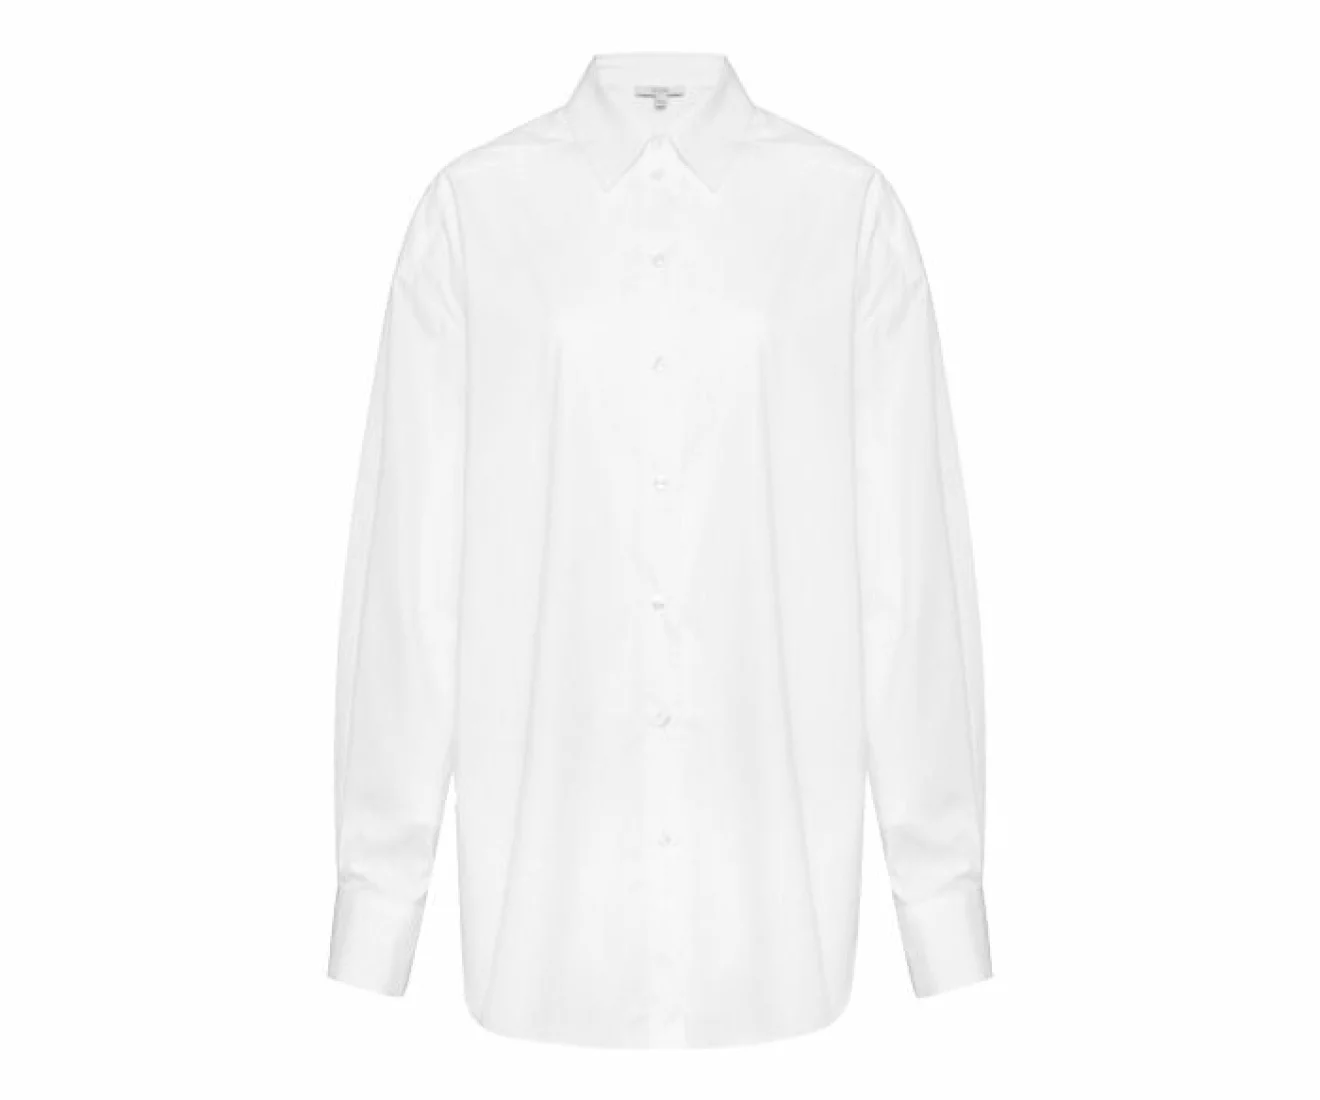 klassisk skjorta i vit nyans gjord i ekologisk bomull från Dagmar